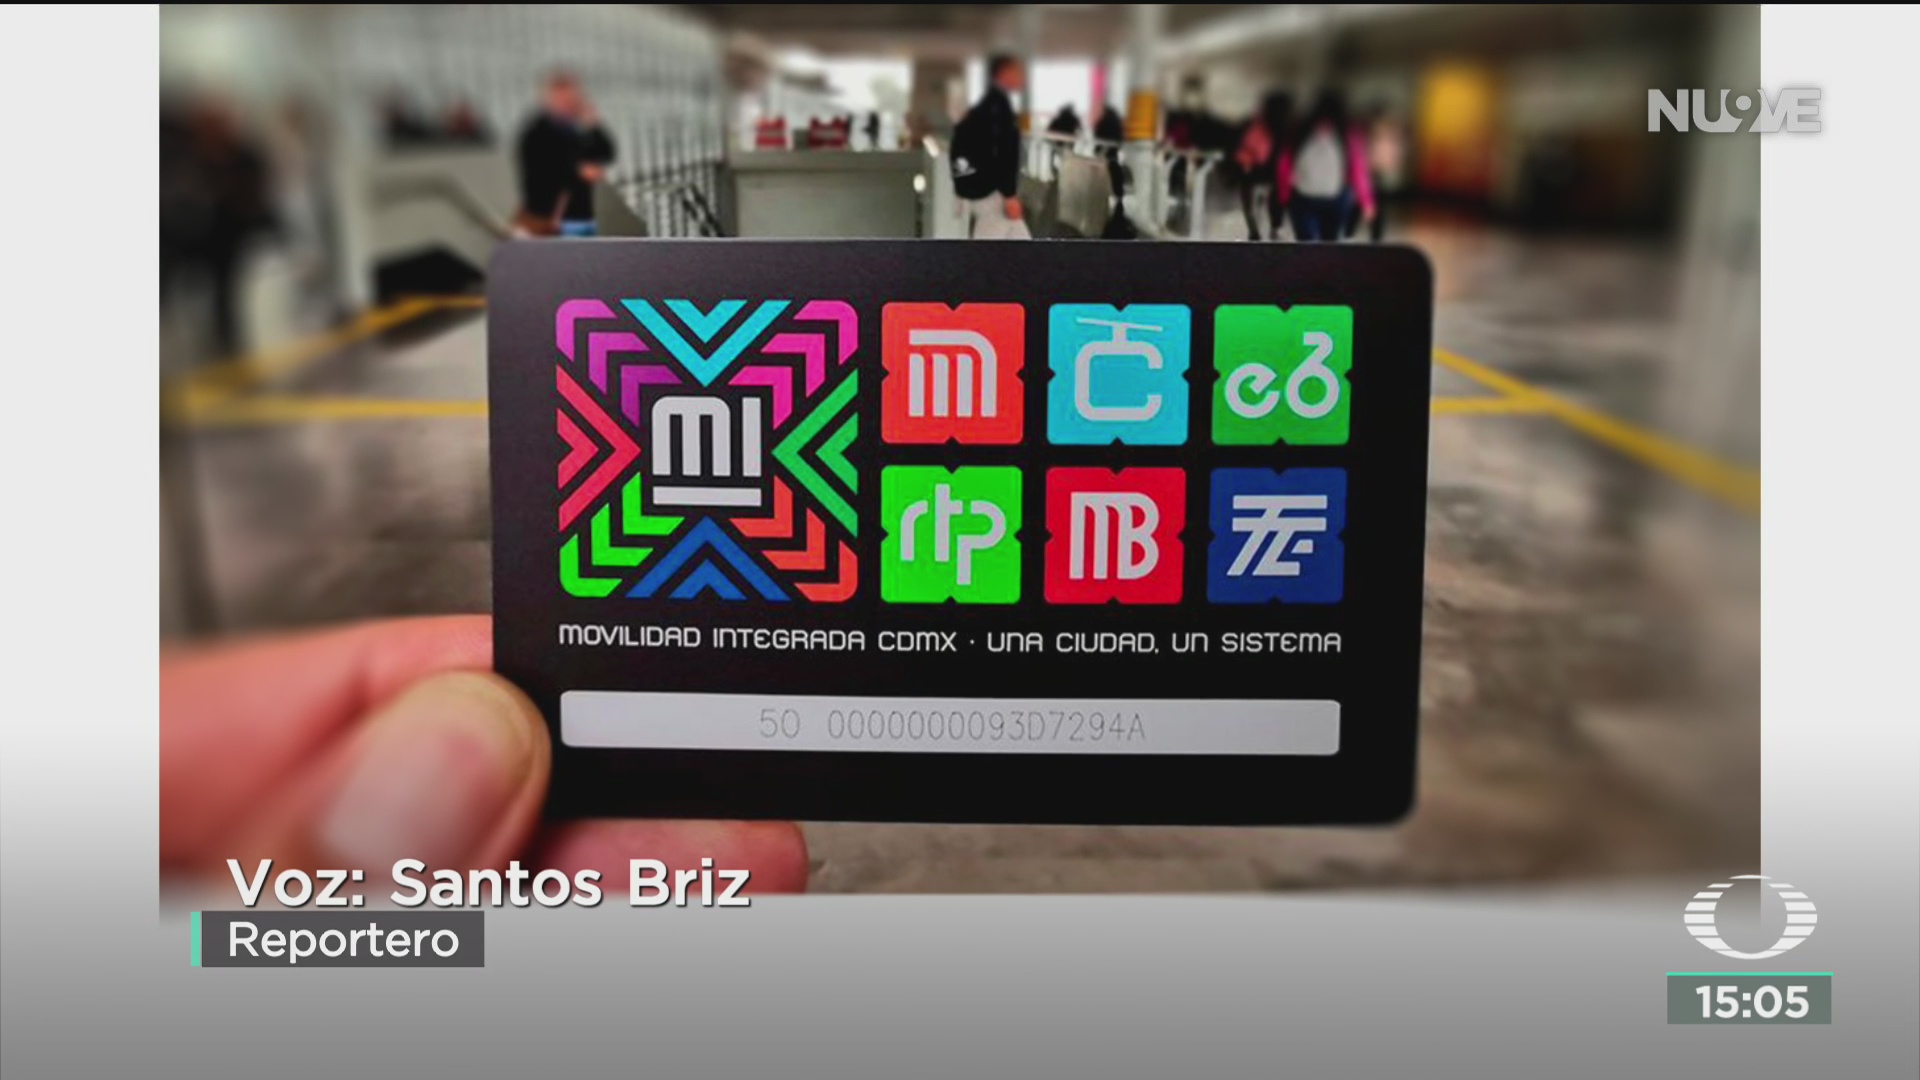 FOTO: detectan en el metro miles de tarjetas falsas con saldo ilicito